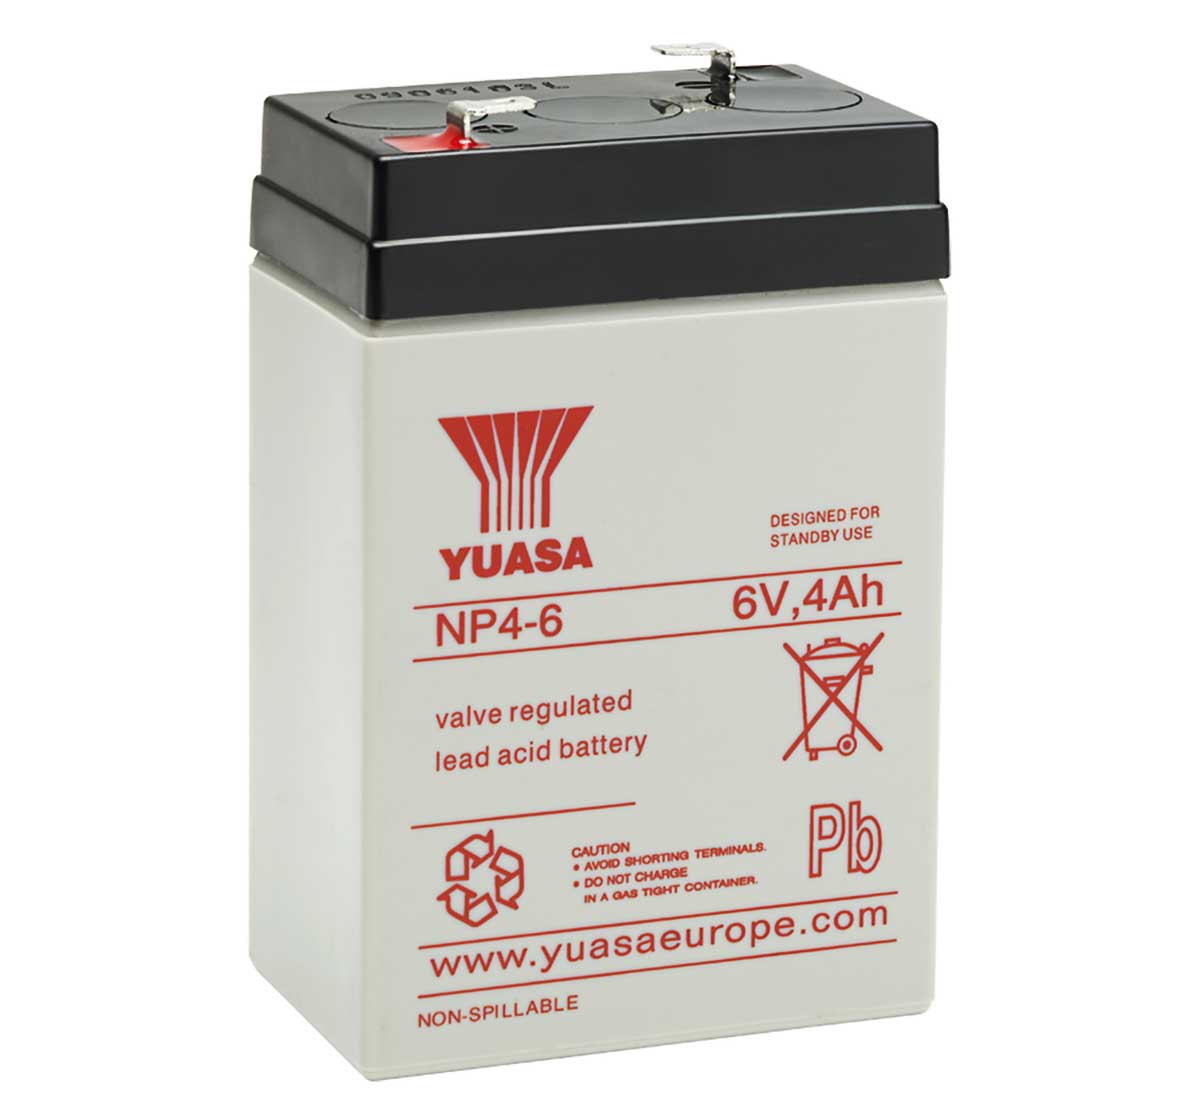 Yuasa NP4-6 4Ah 6V VRLA Lead Acid battery